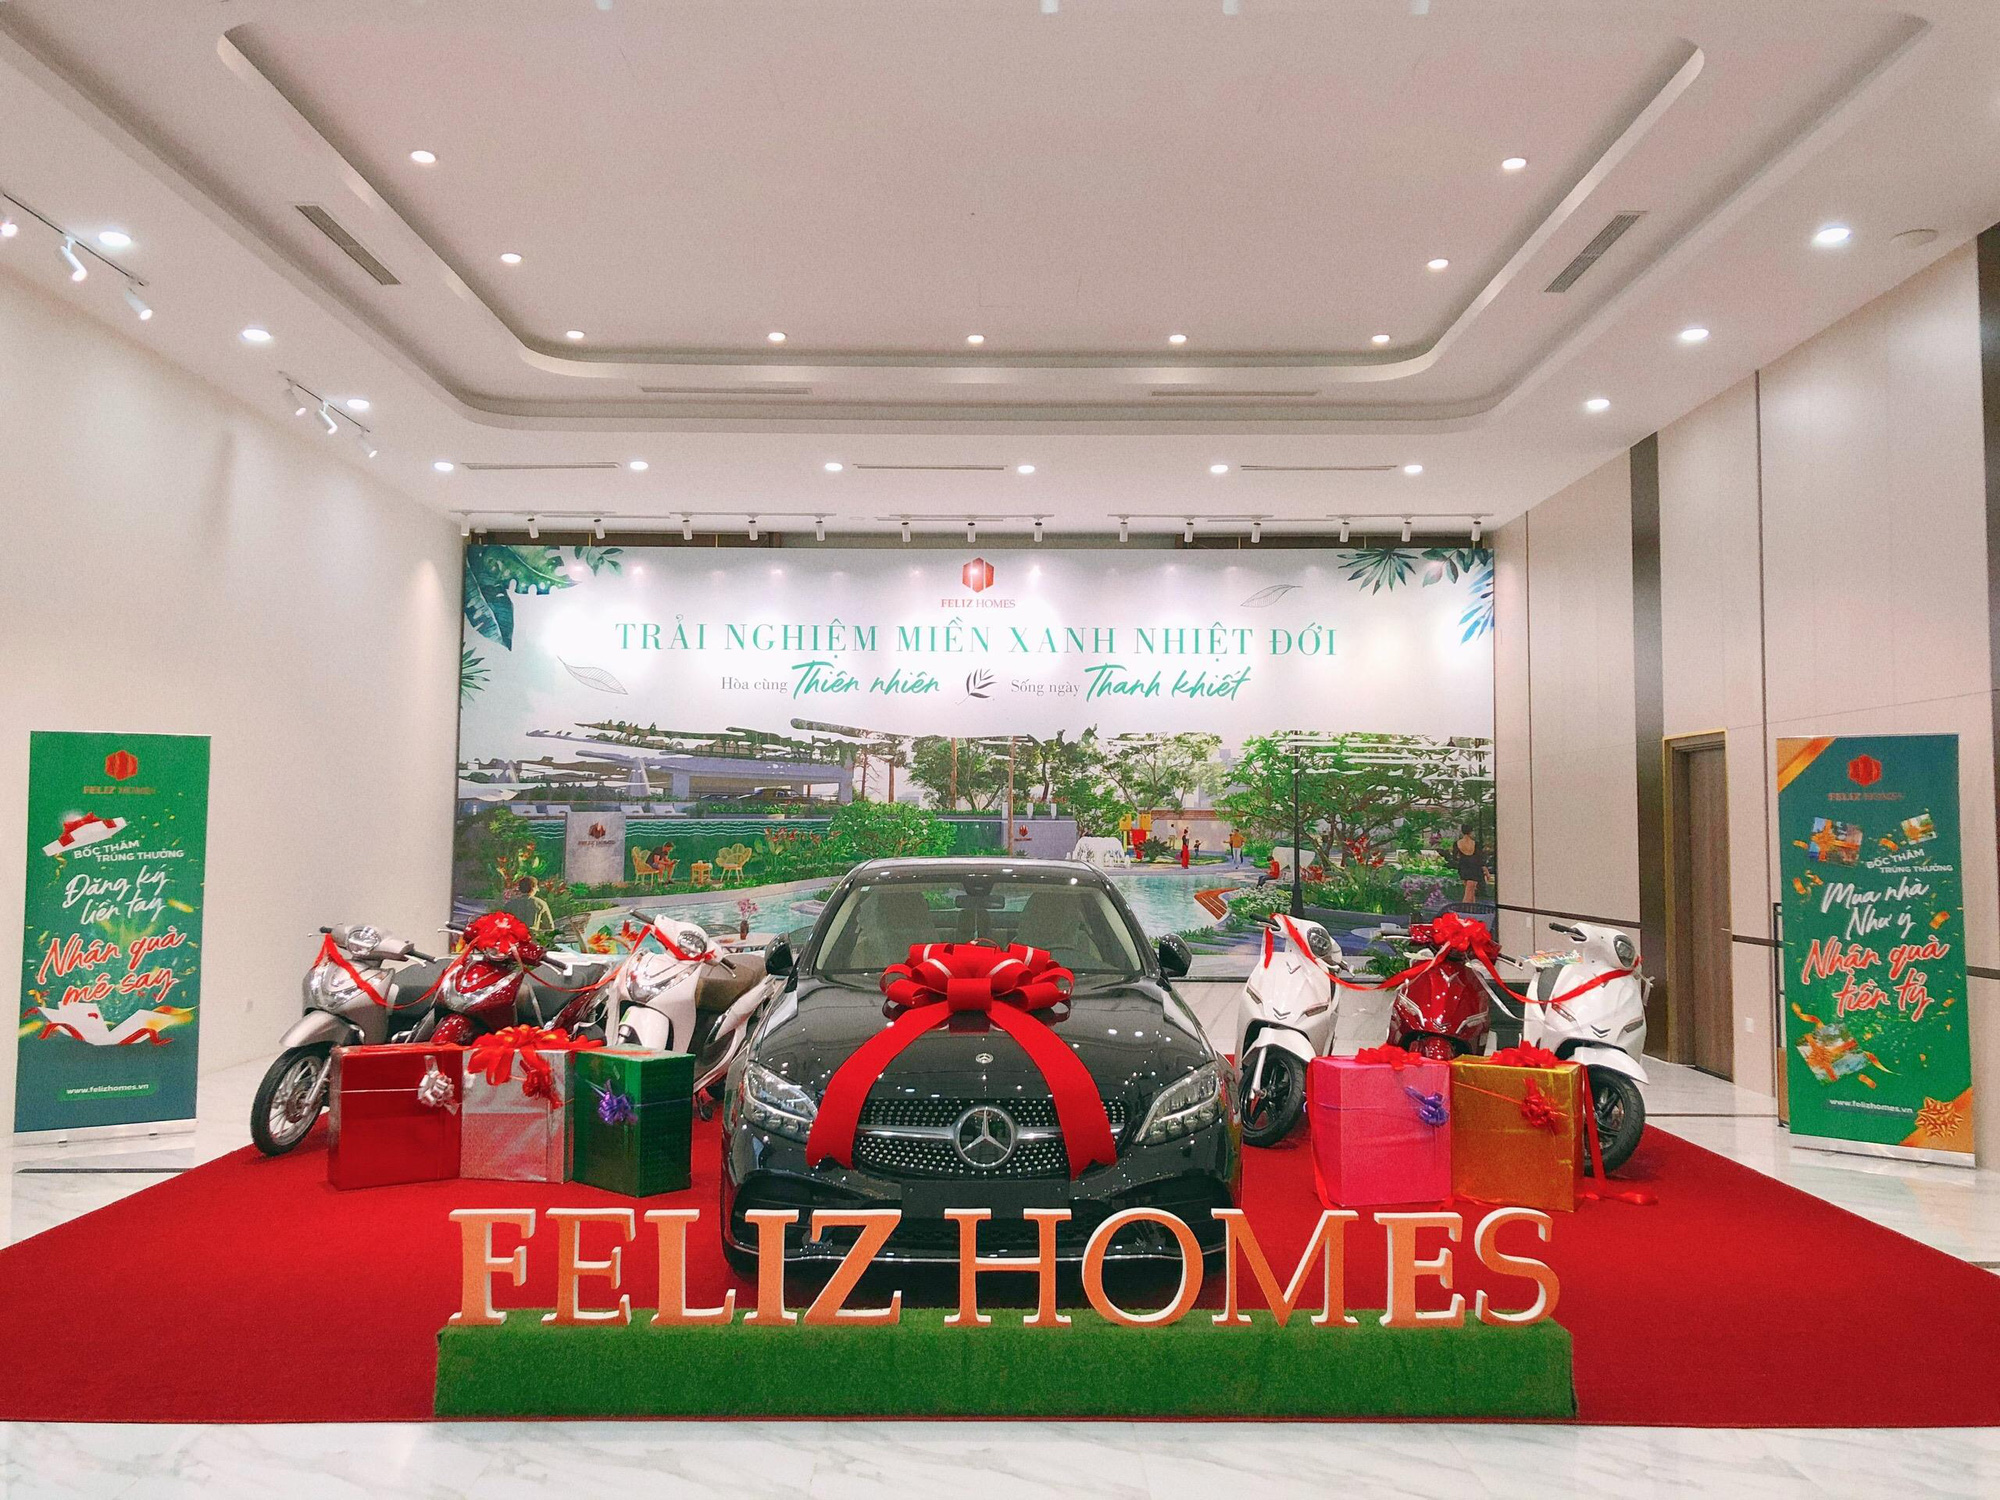 Feliz Homes: Giao dịch nhộn nhịp tại sự kiện mở bán giỏ hàng năm 2022 - Ảnh 3.